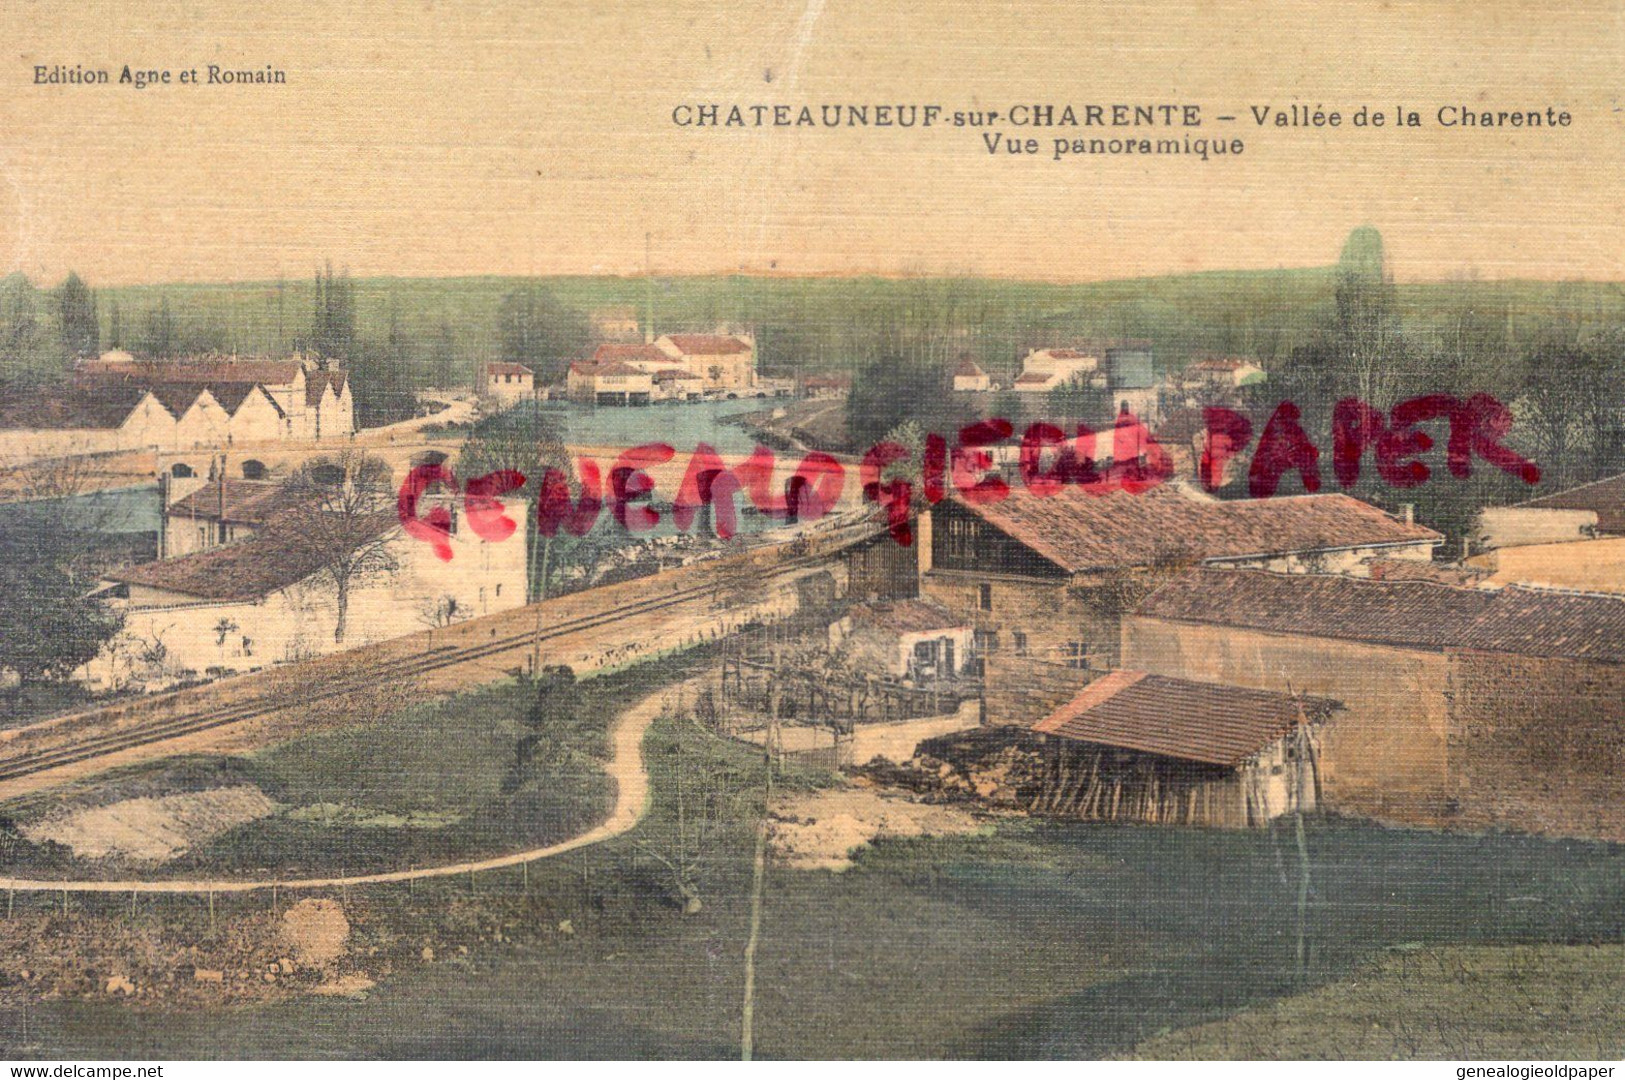 16-CHATEAUNEUF - VALLEE DE LA CHARENTE VUE PANORAMIQUE-EDITEUR AGNE ET ROMAIN-CARTE TOILEE   - CHARENTE - Chateauneuf Sur Charente